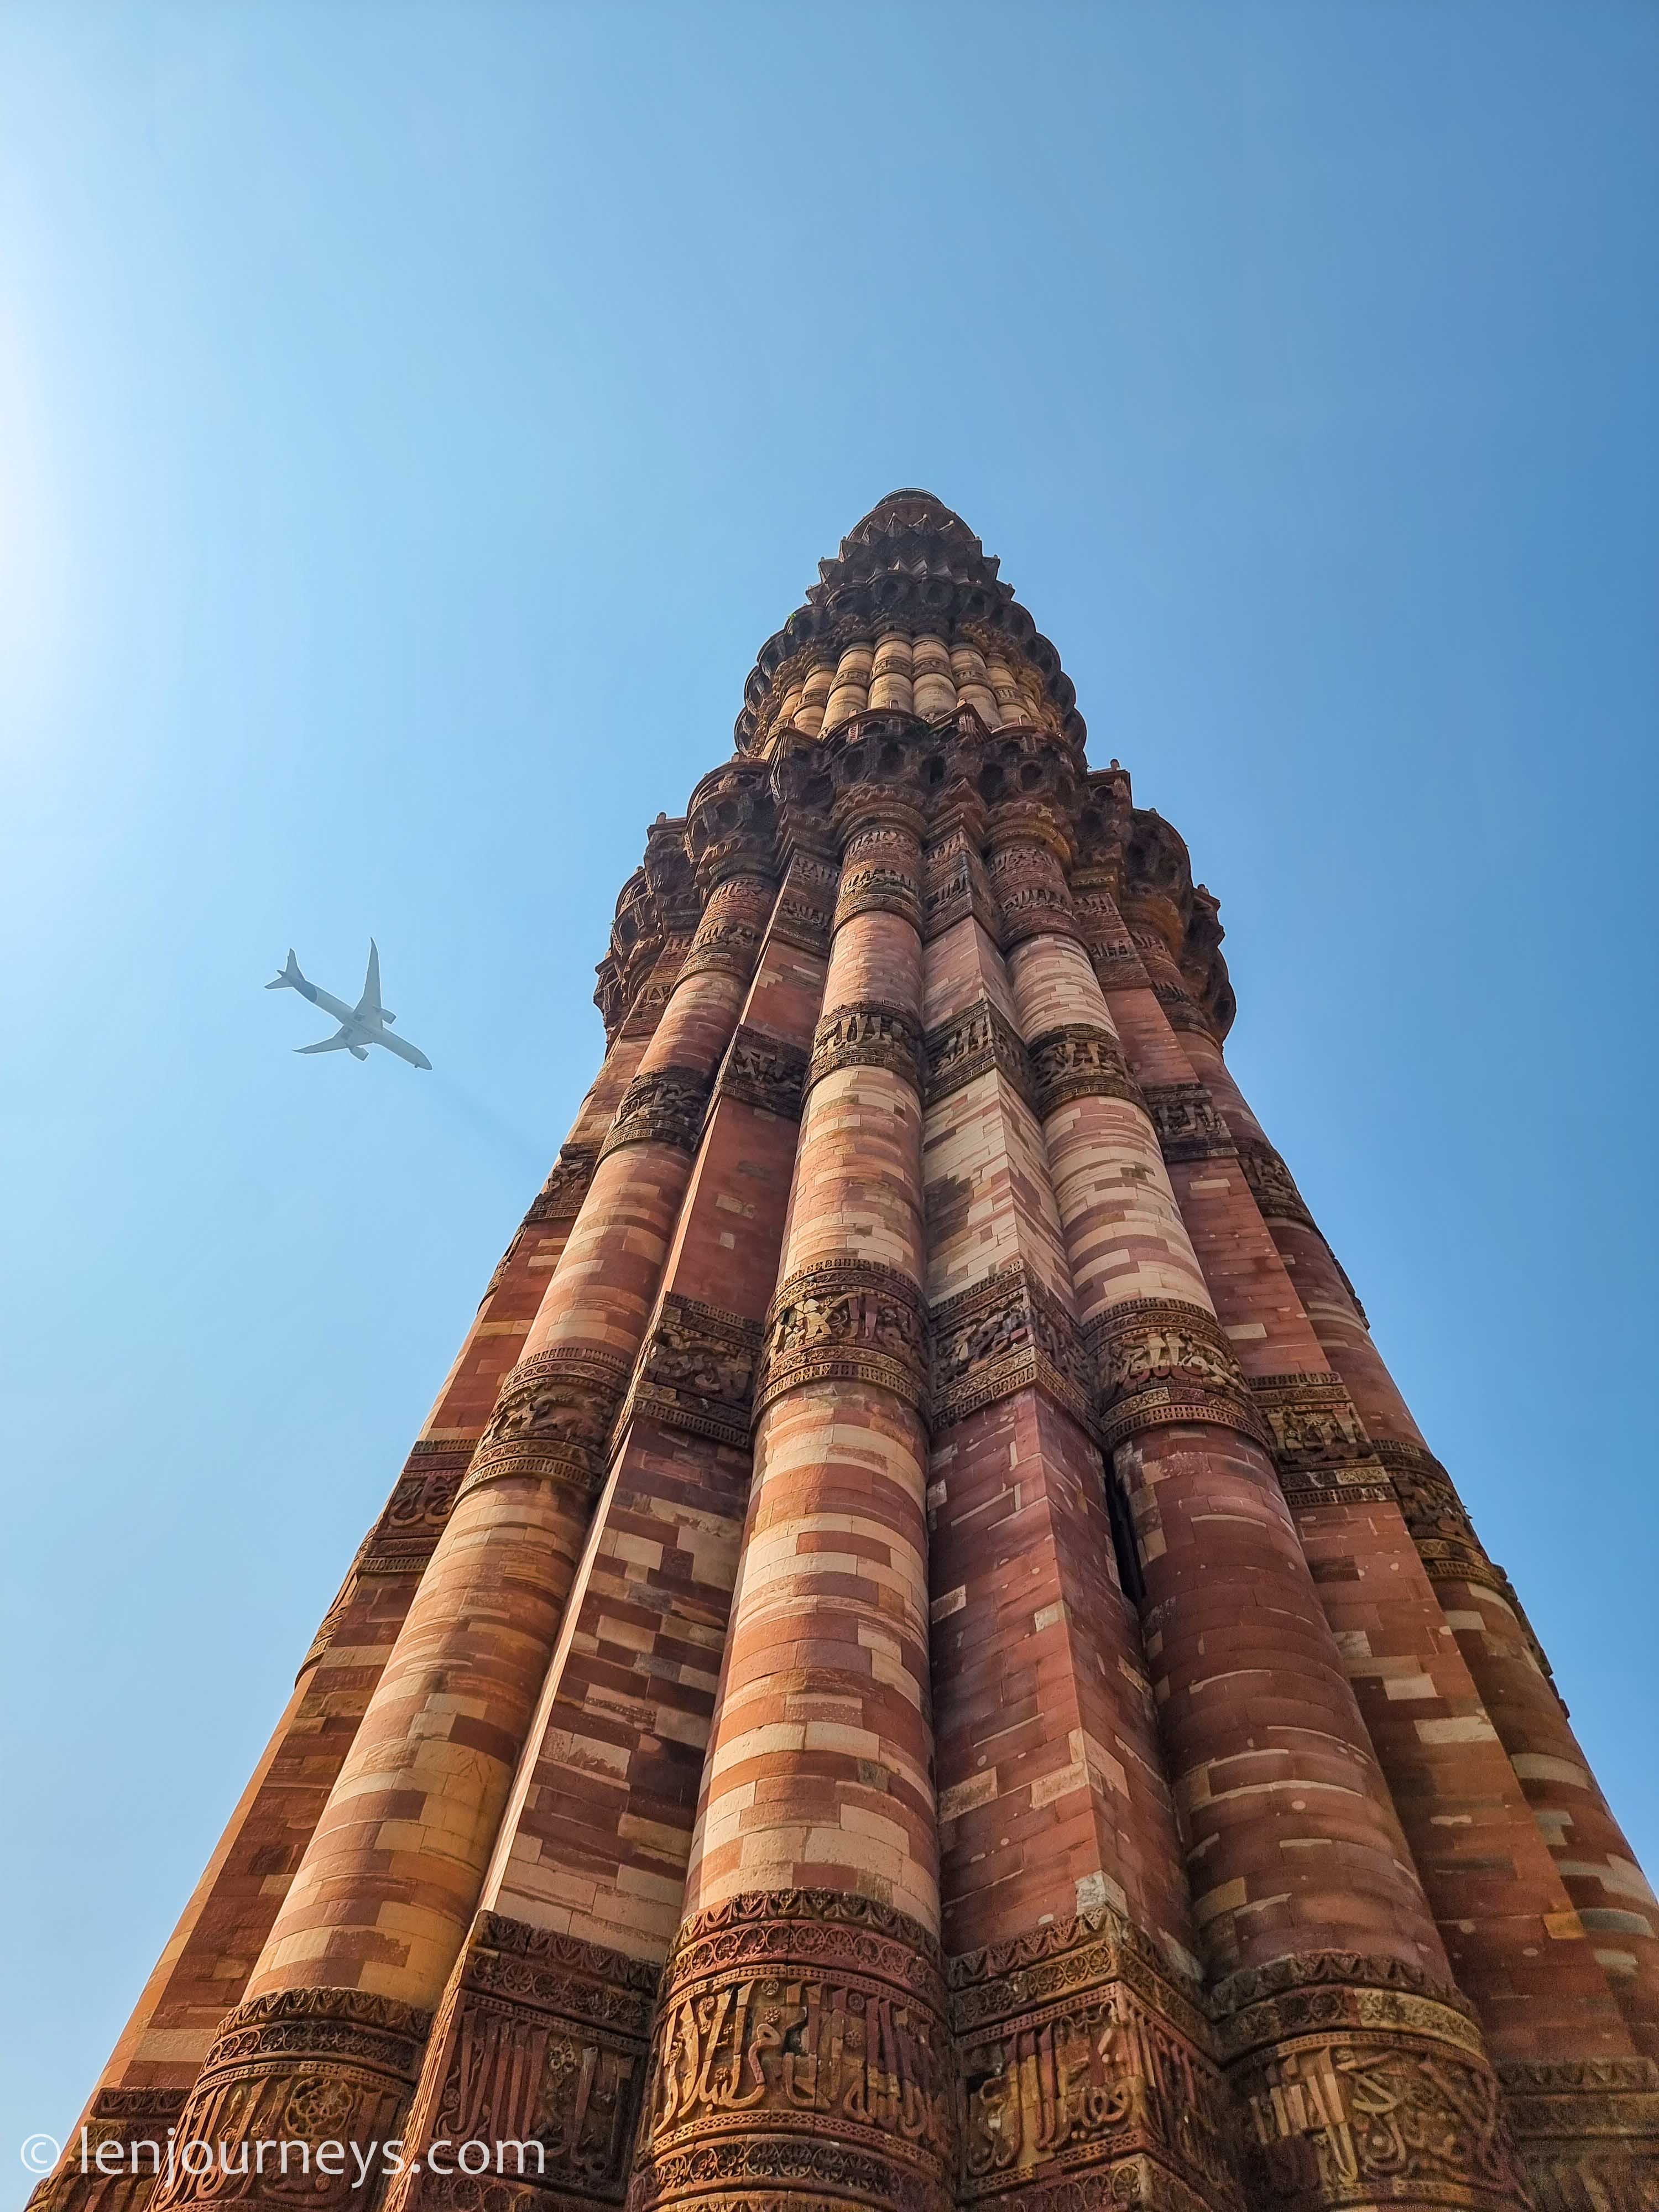 Qutb Minar, Delhi